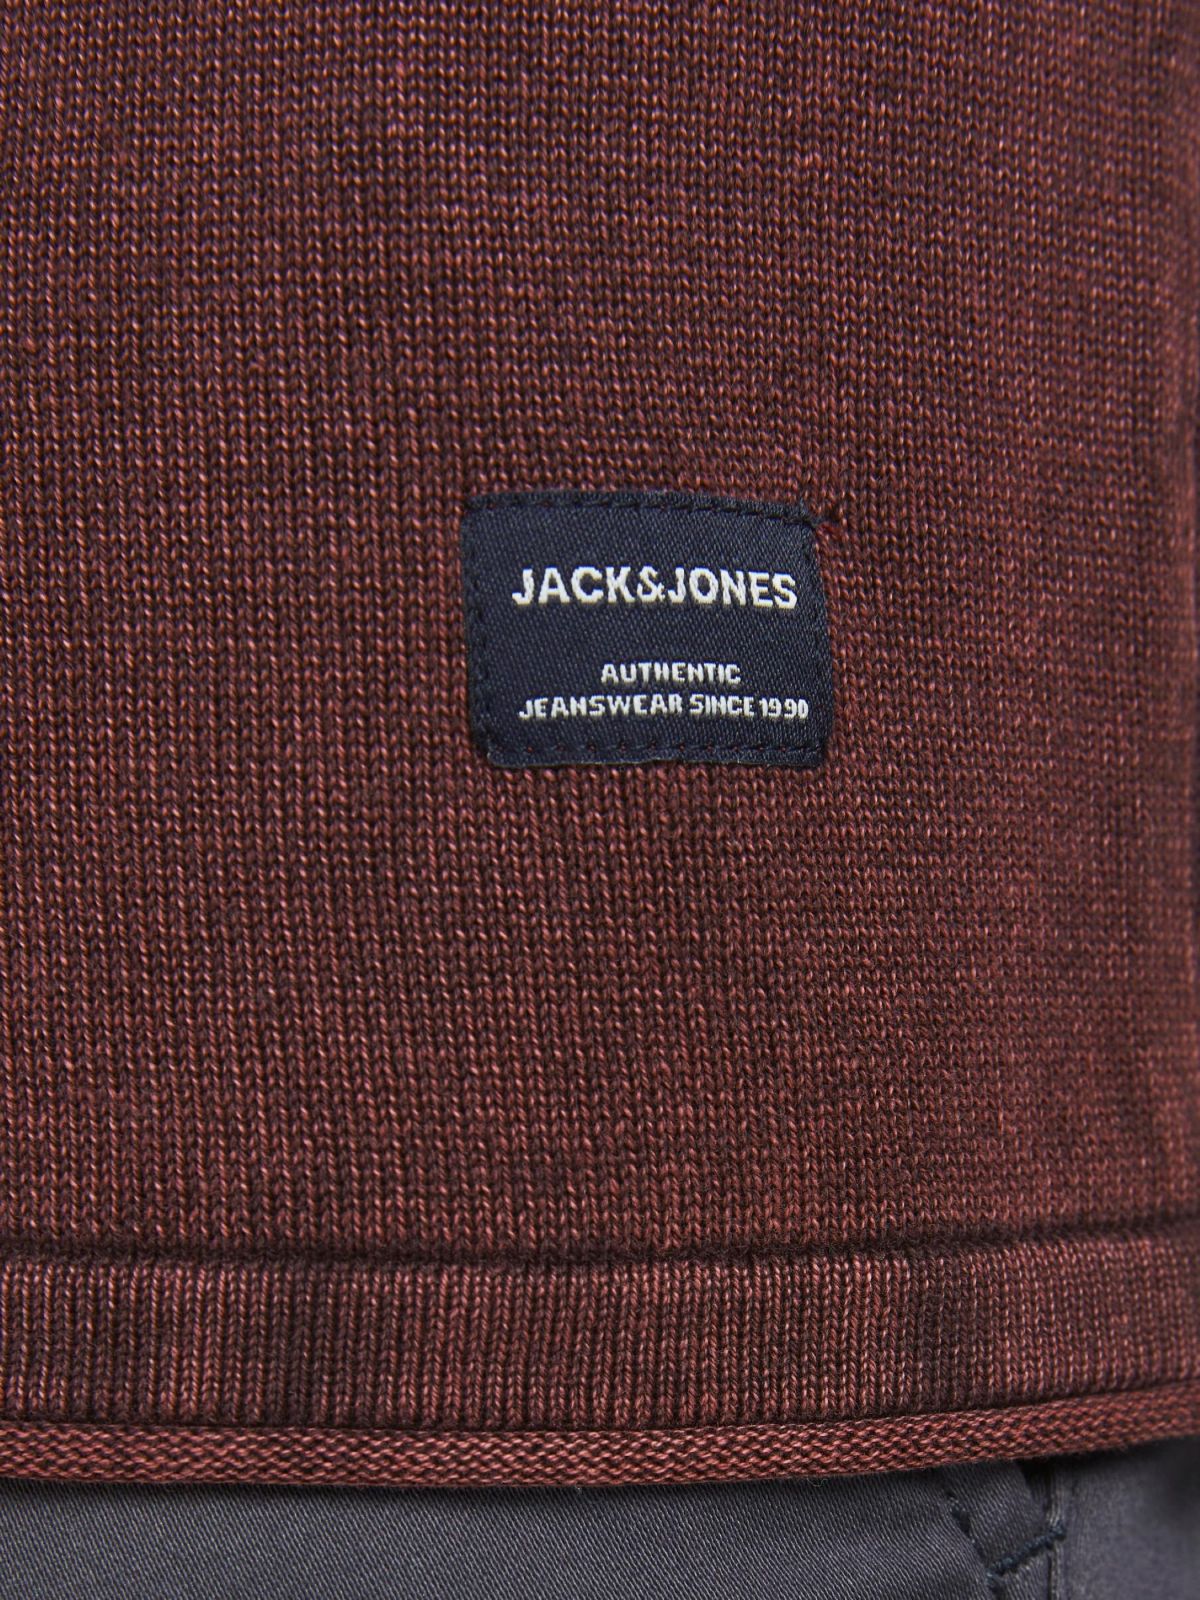  סריג ווש עם לוגו של JACK AND JONES